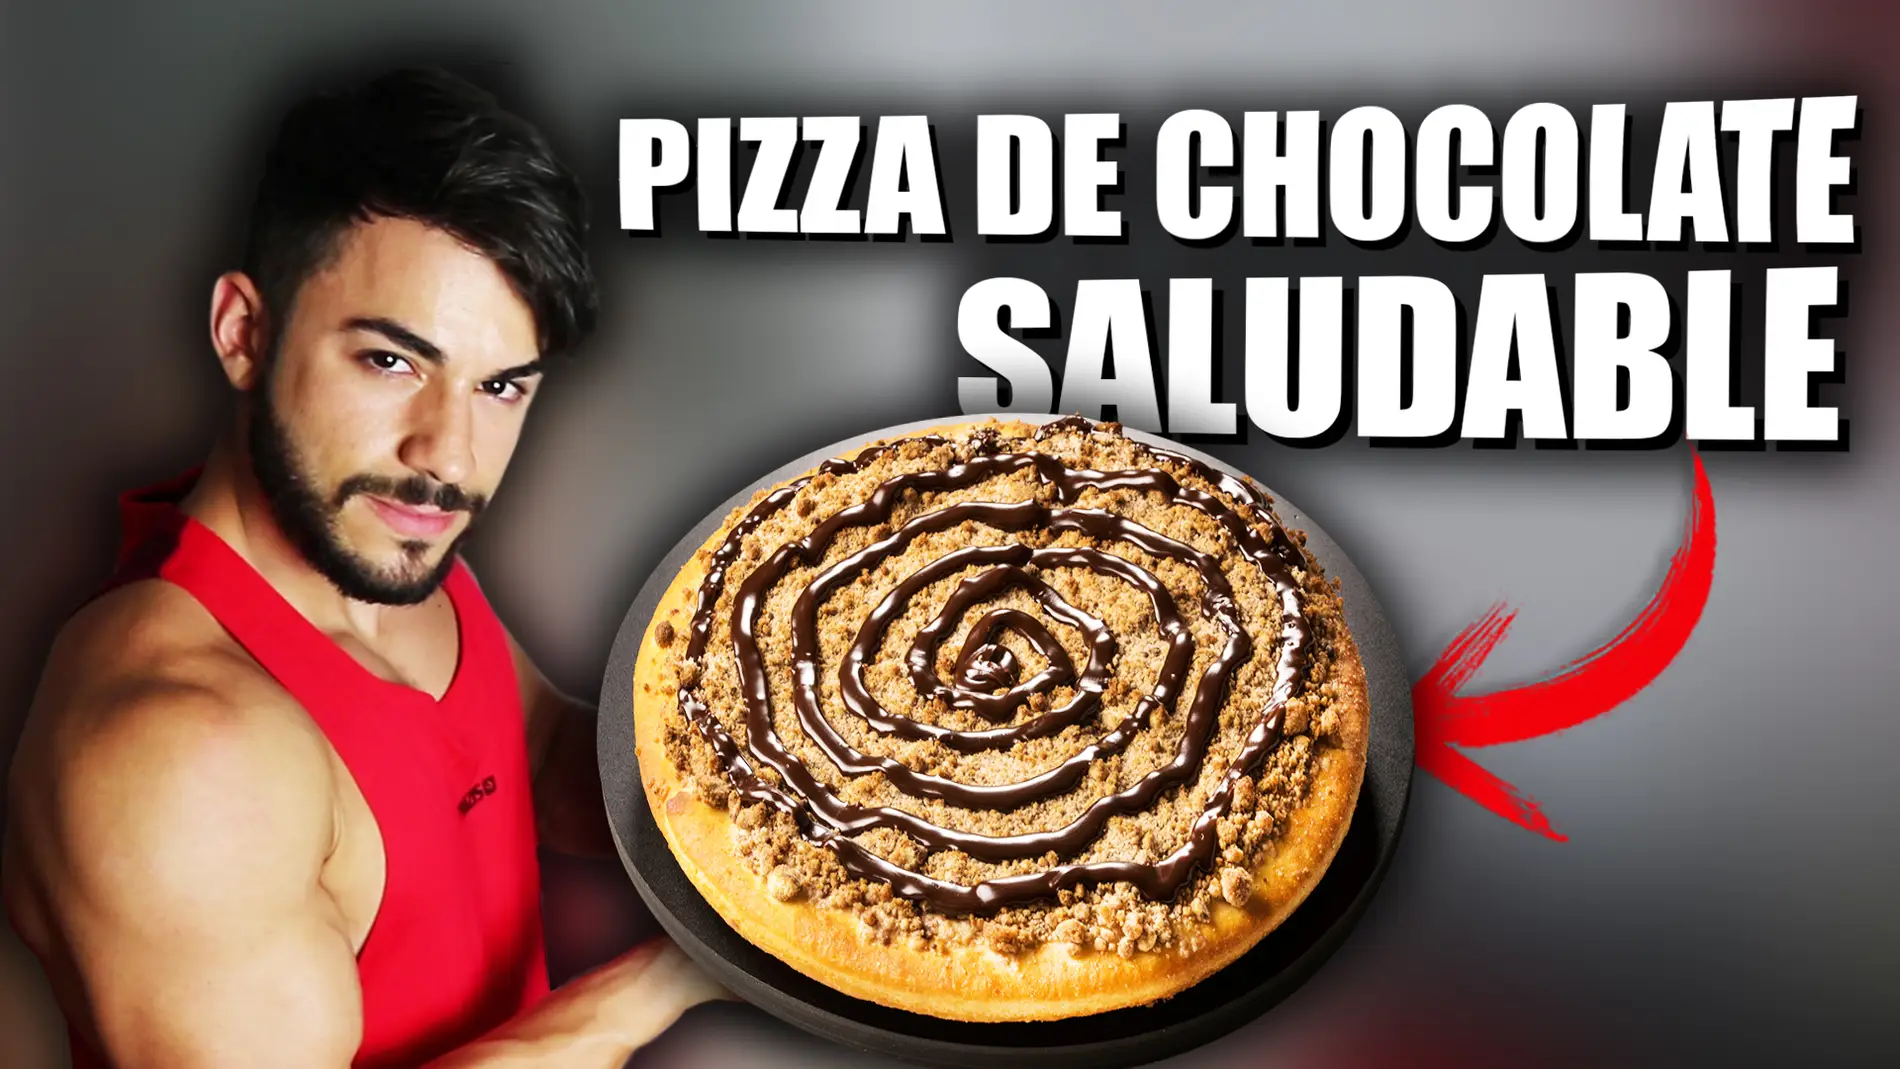 Flooxer | SQUAD - Receta pizza de chocolate fitness saludable y rápida | Ya Corbacho